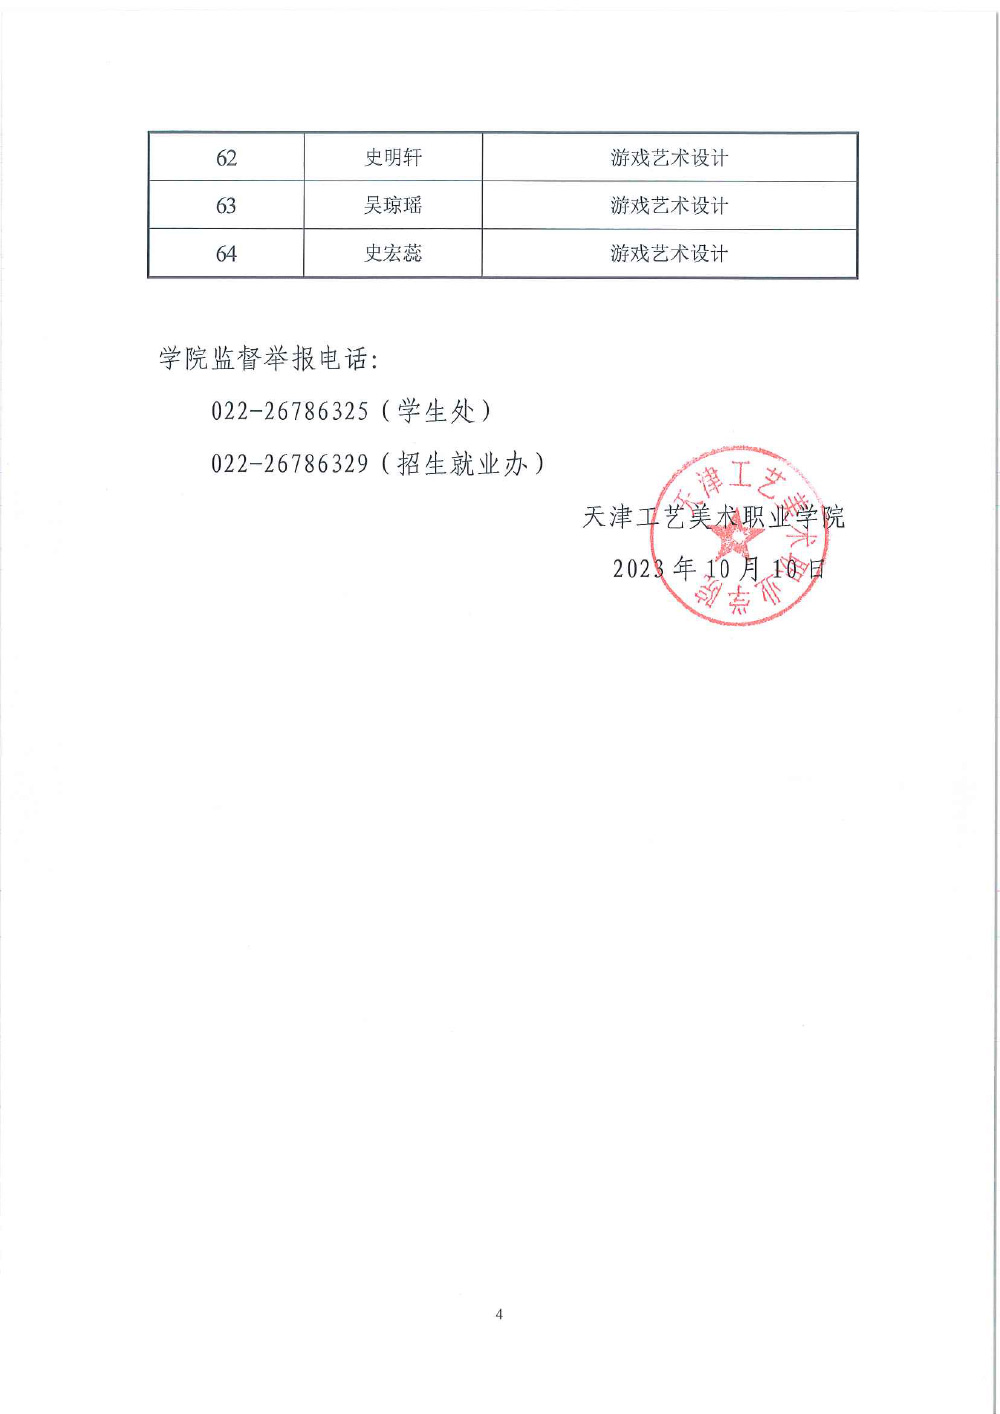 天下足球网天津市求职创业补贴工作的公示(1)-4.jpg